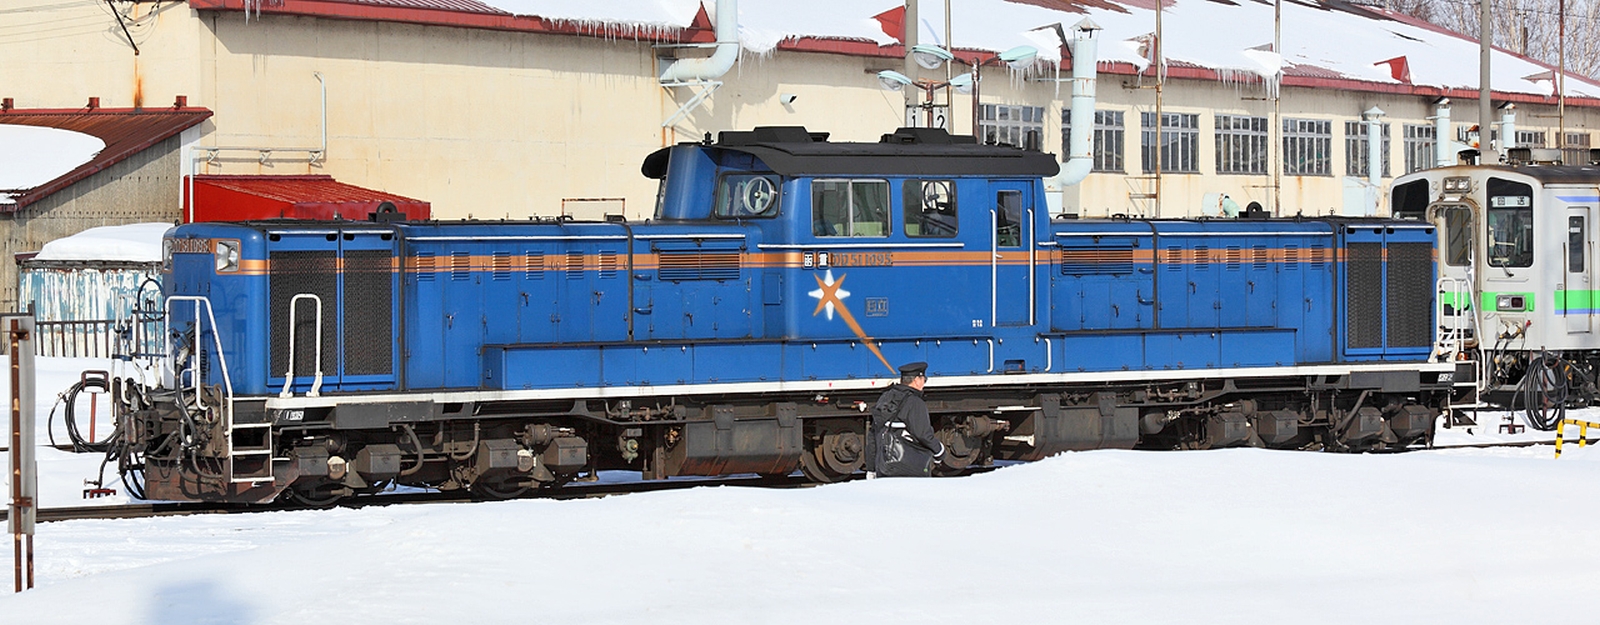 DD51 1803 in 2007 as a work train locomotive